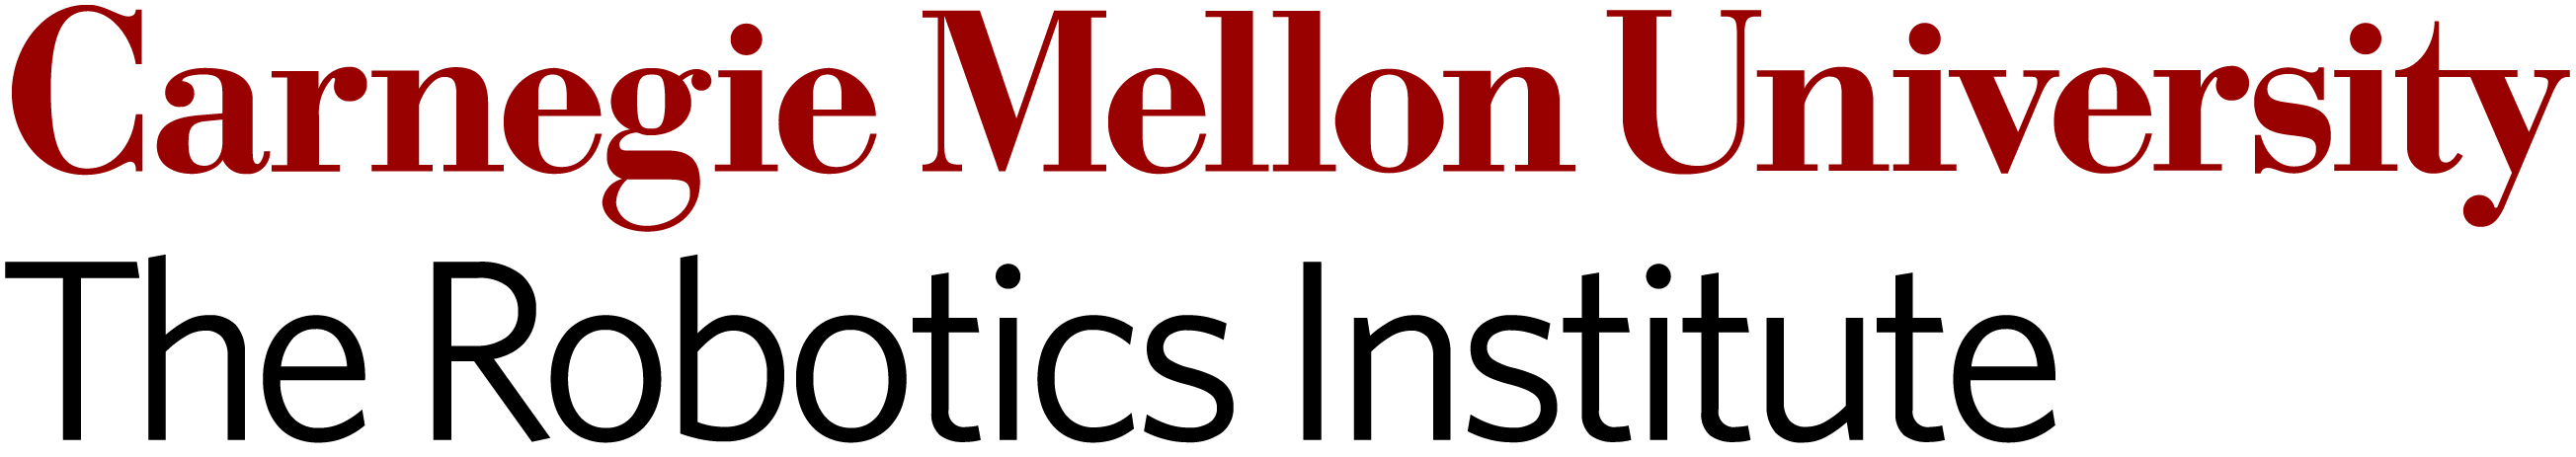 RI Logo - RI Logos - The Robotics Institute Carnegie Mellon University